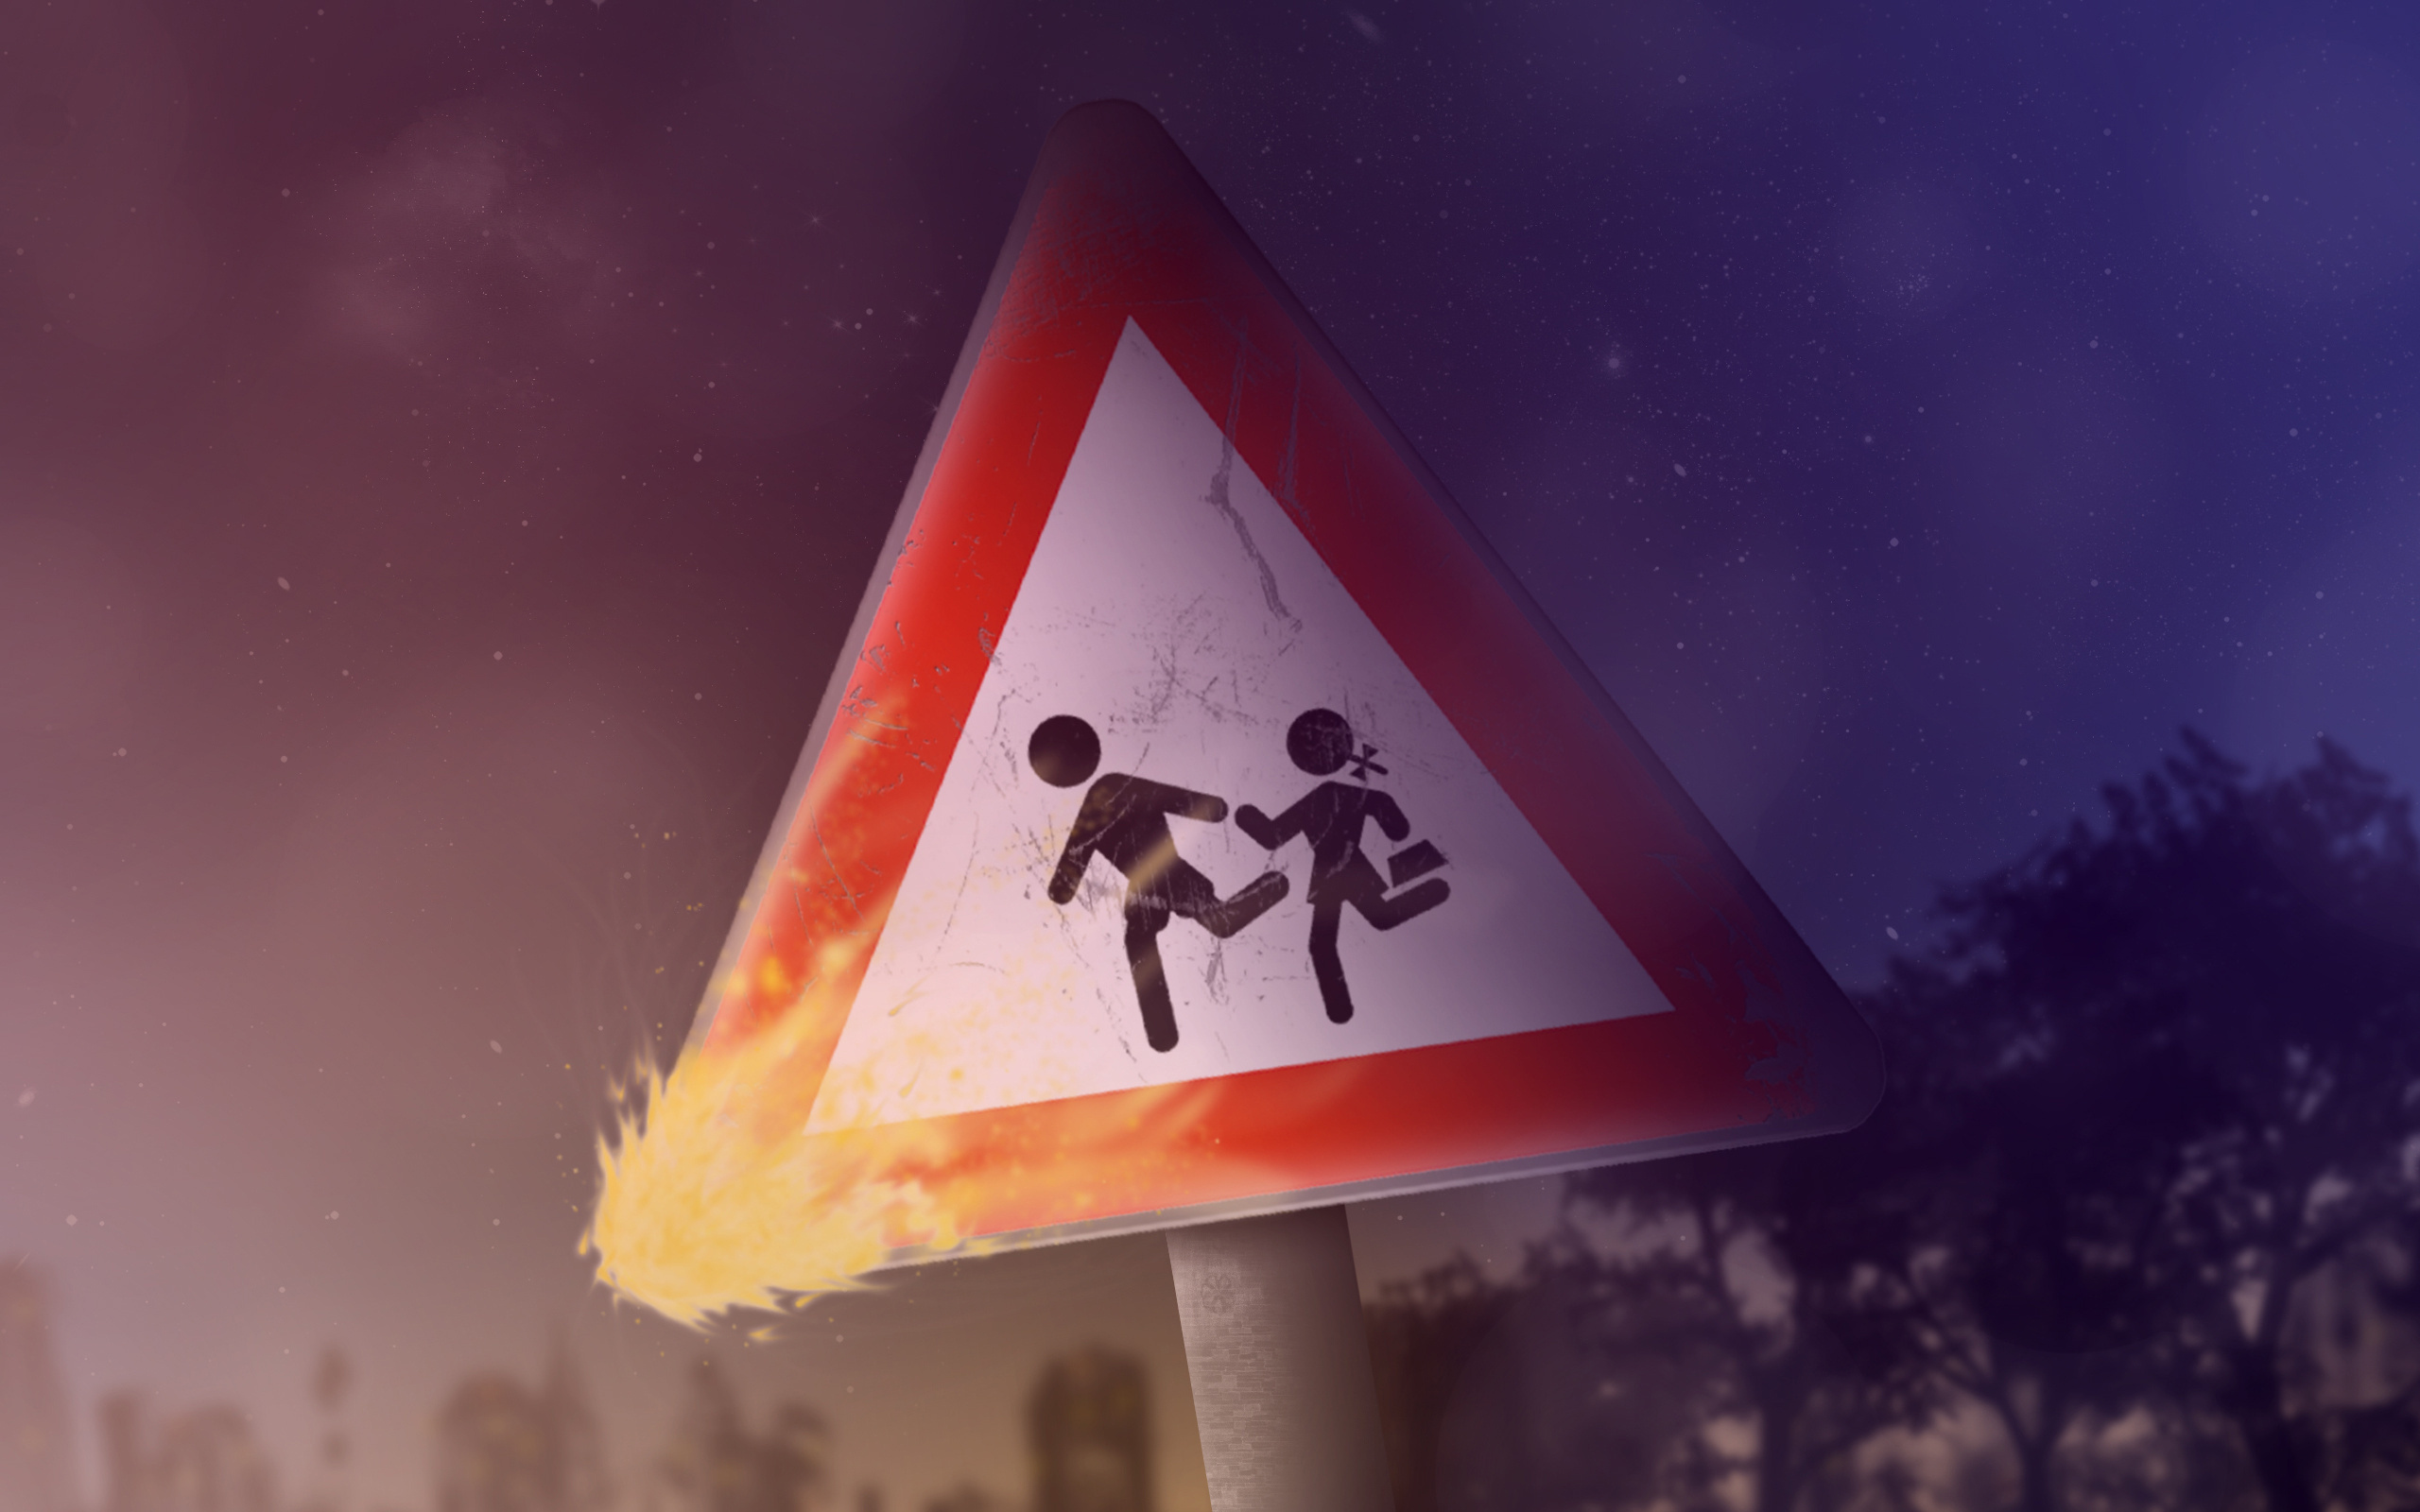 عکس تابلوهای اخطاری آتش گرفته جهت آموزش راهنمایی و رانندگی